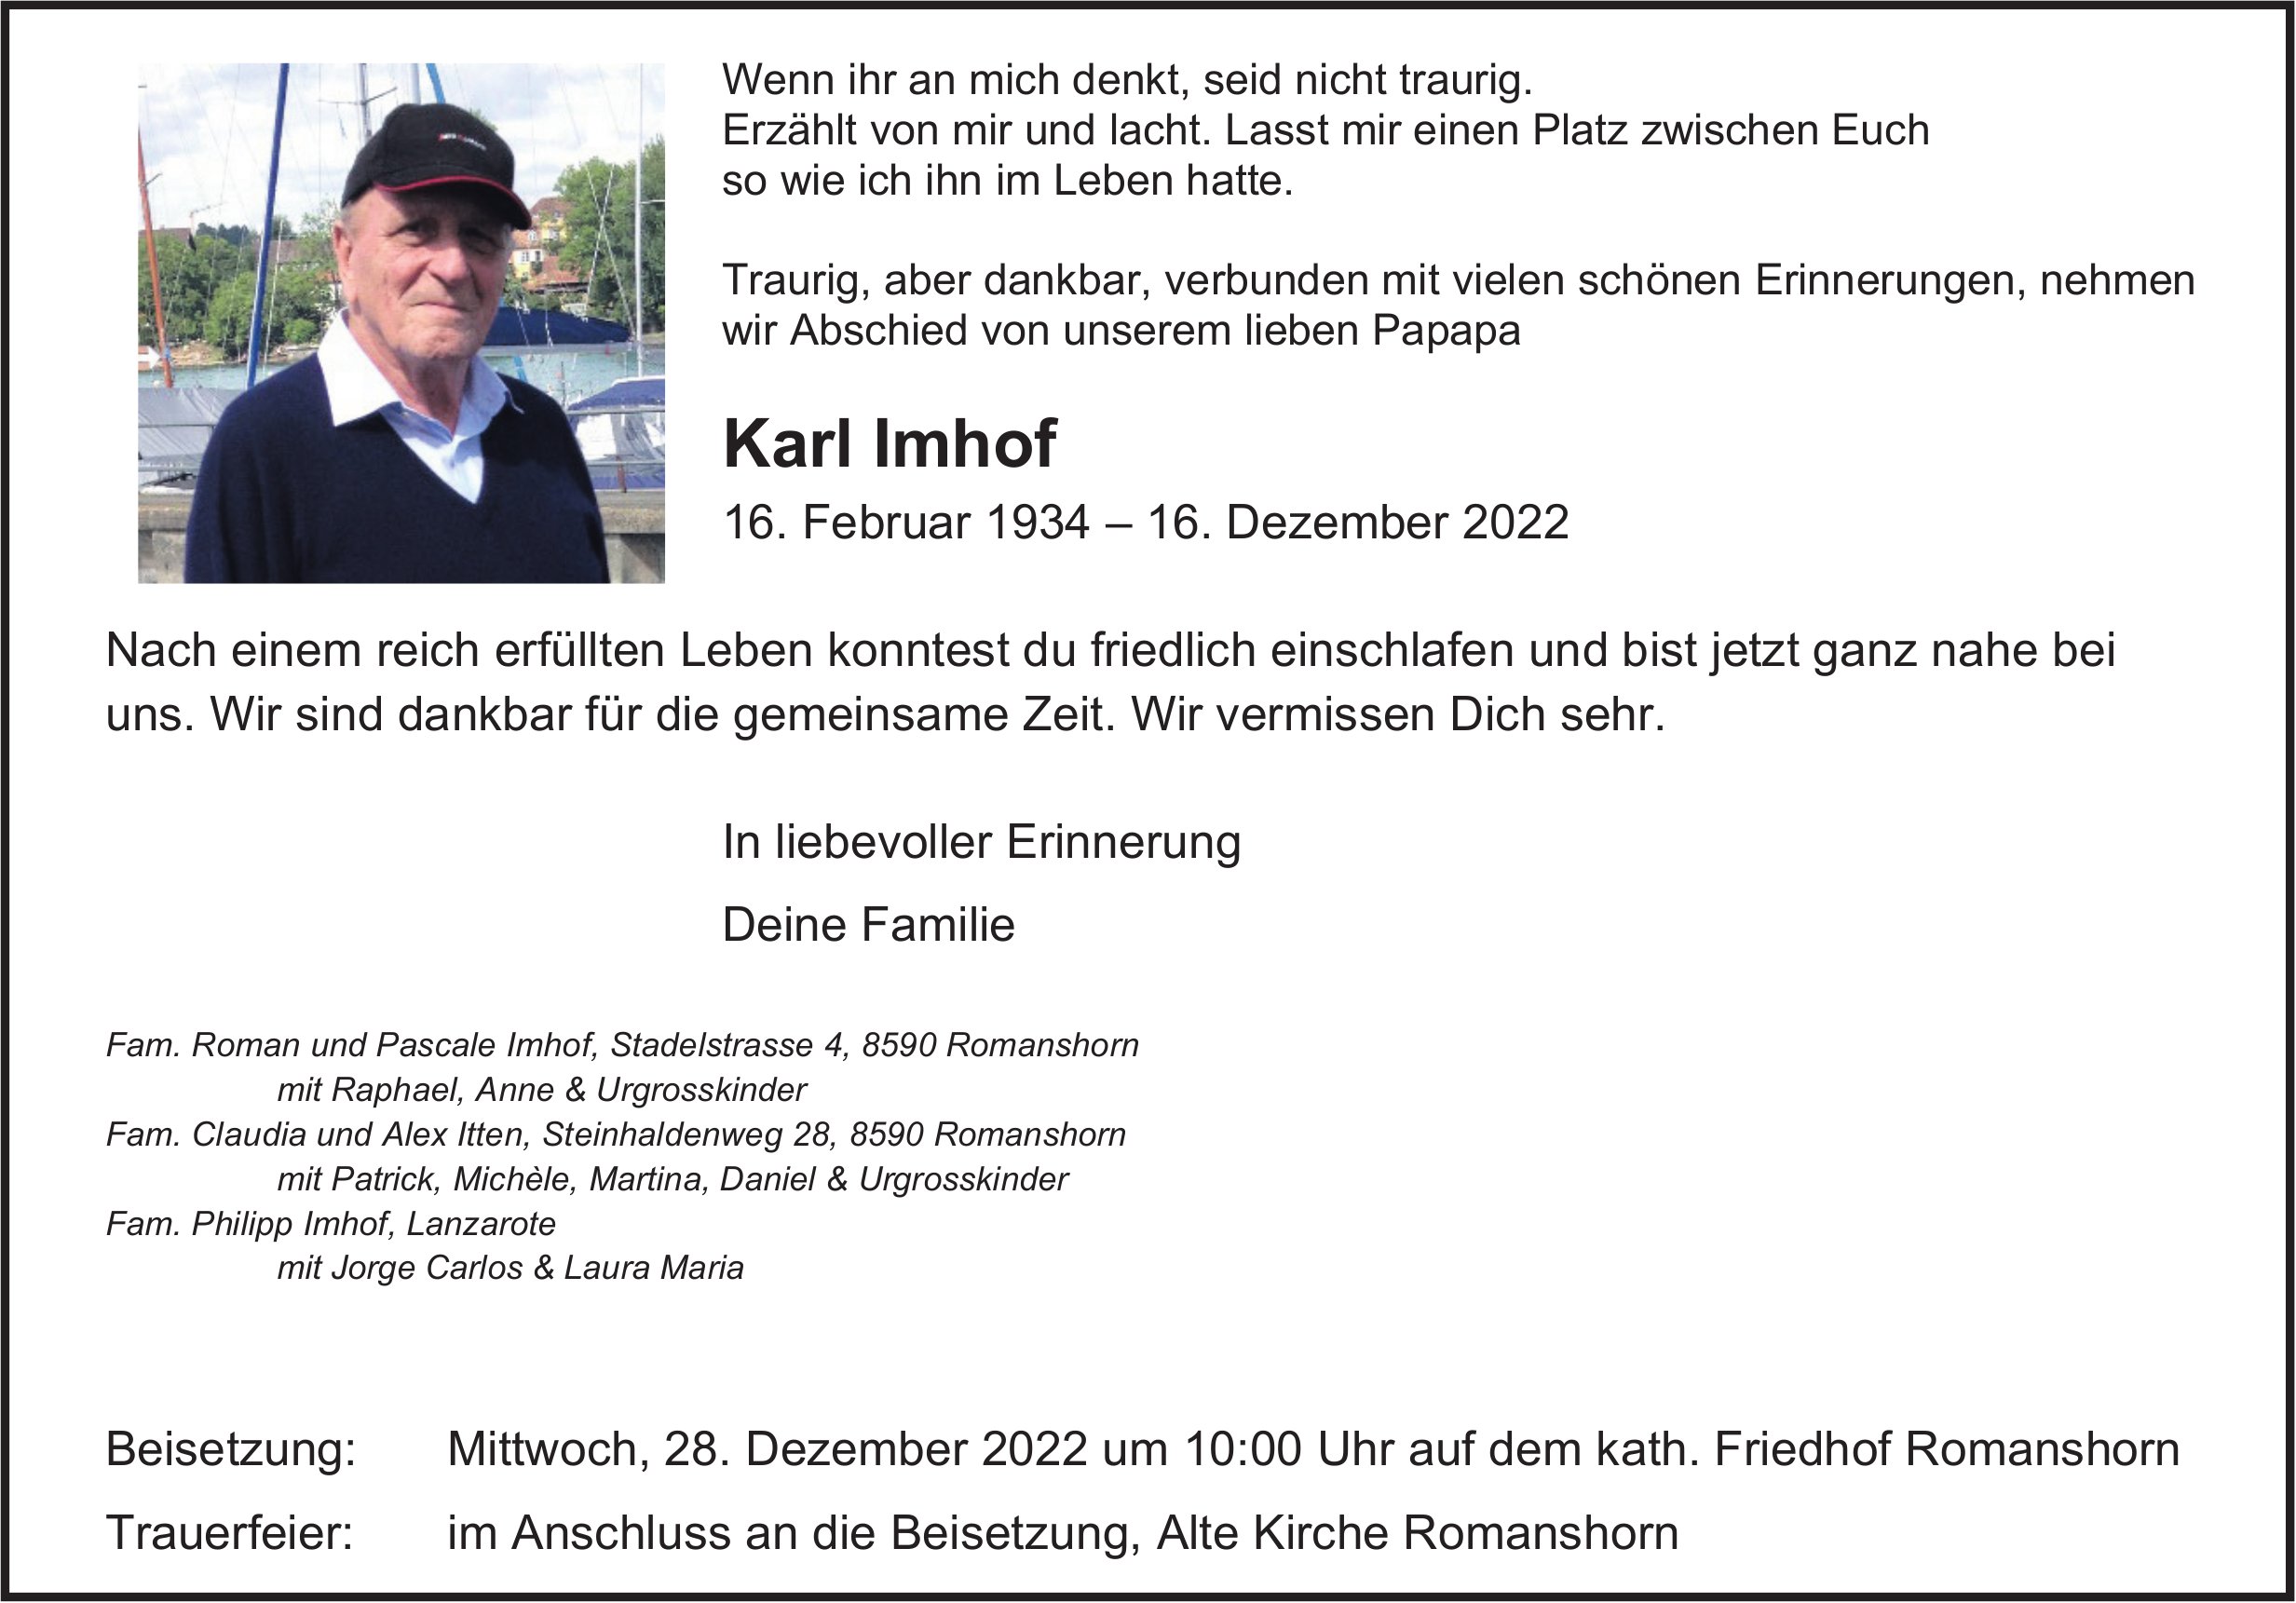 Imhof Karl, Dezember 2022 / TA